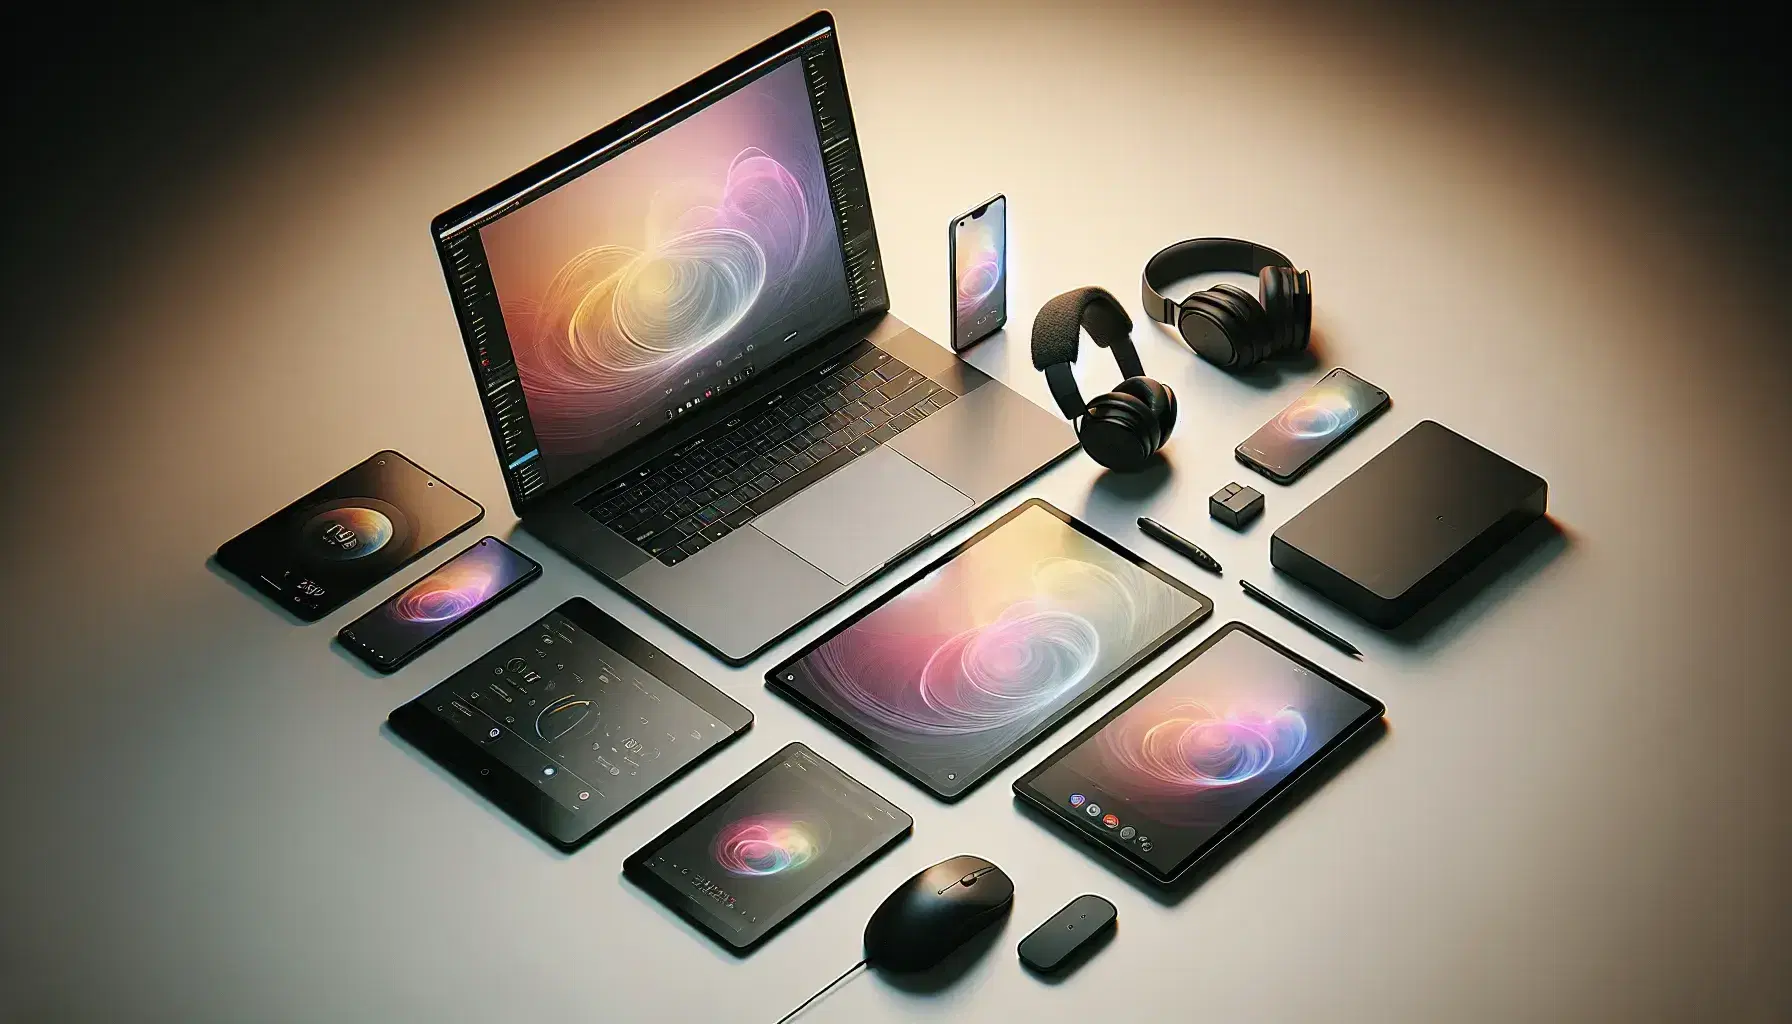 Espacio de trabajo moderno con portátil abierto, tablet digital, smartphone, auriculares inalámbricos y ratón ergonómico sobre superficie clara.